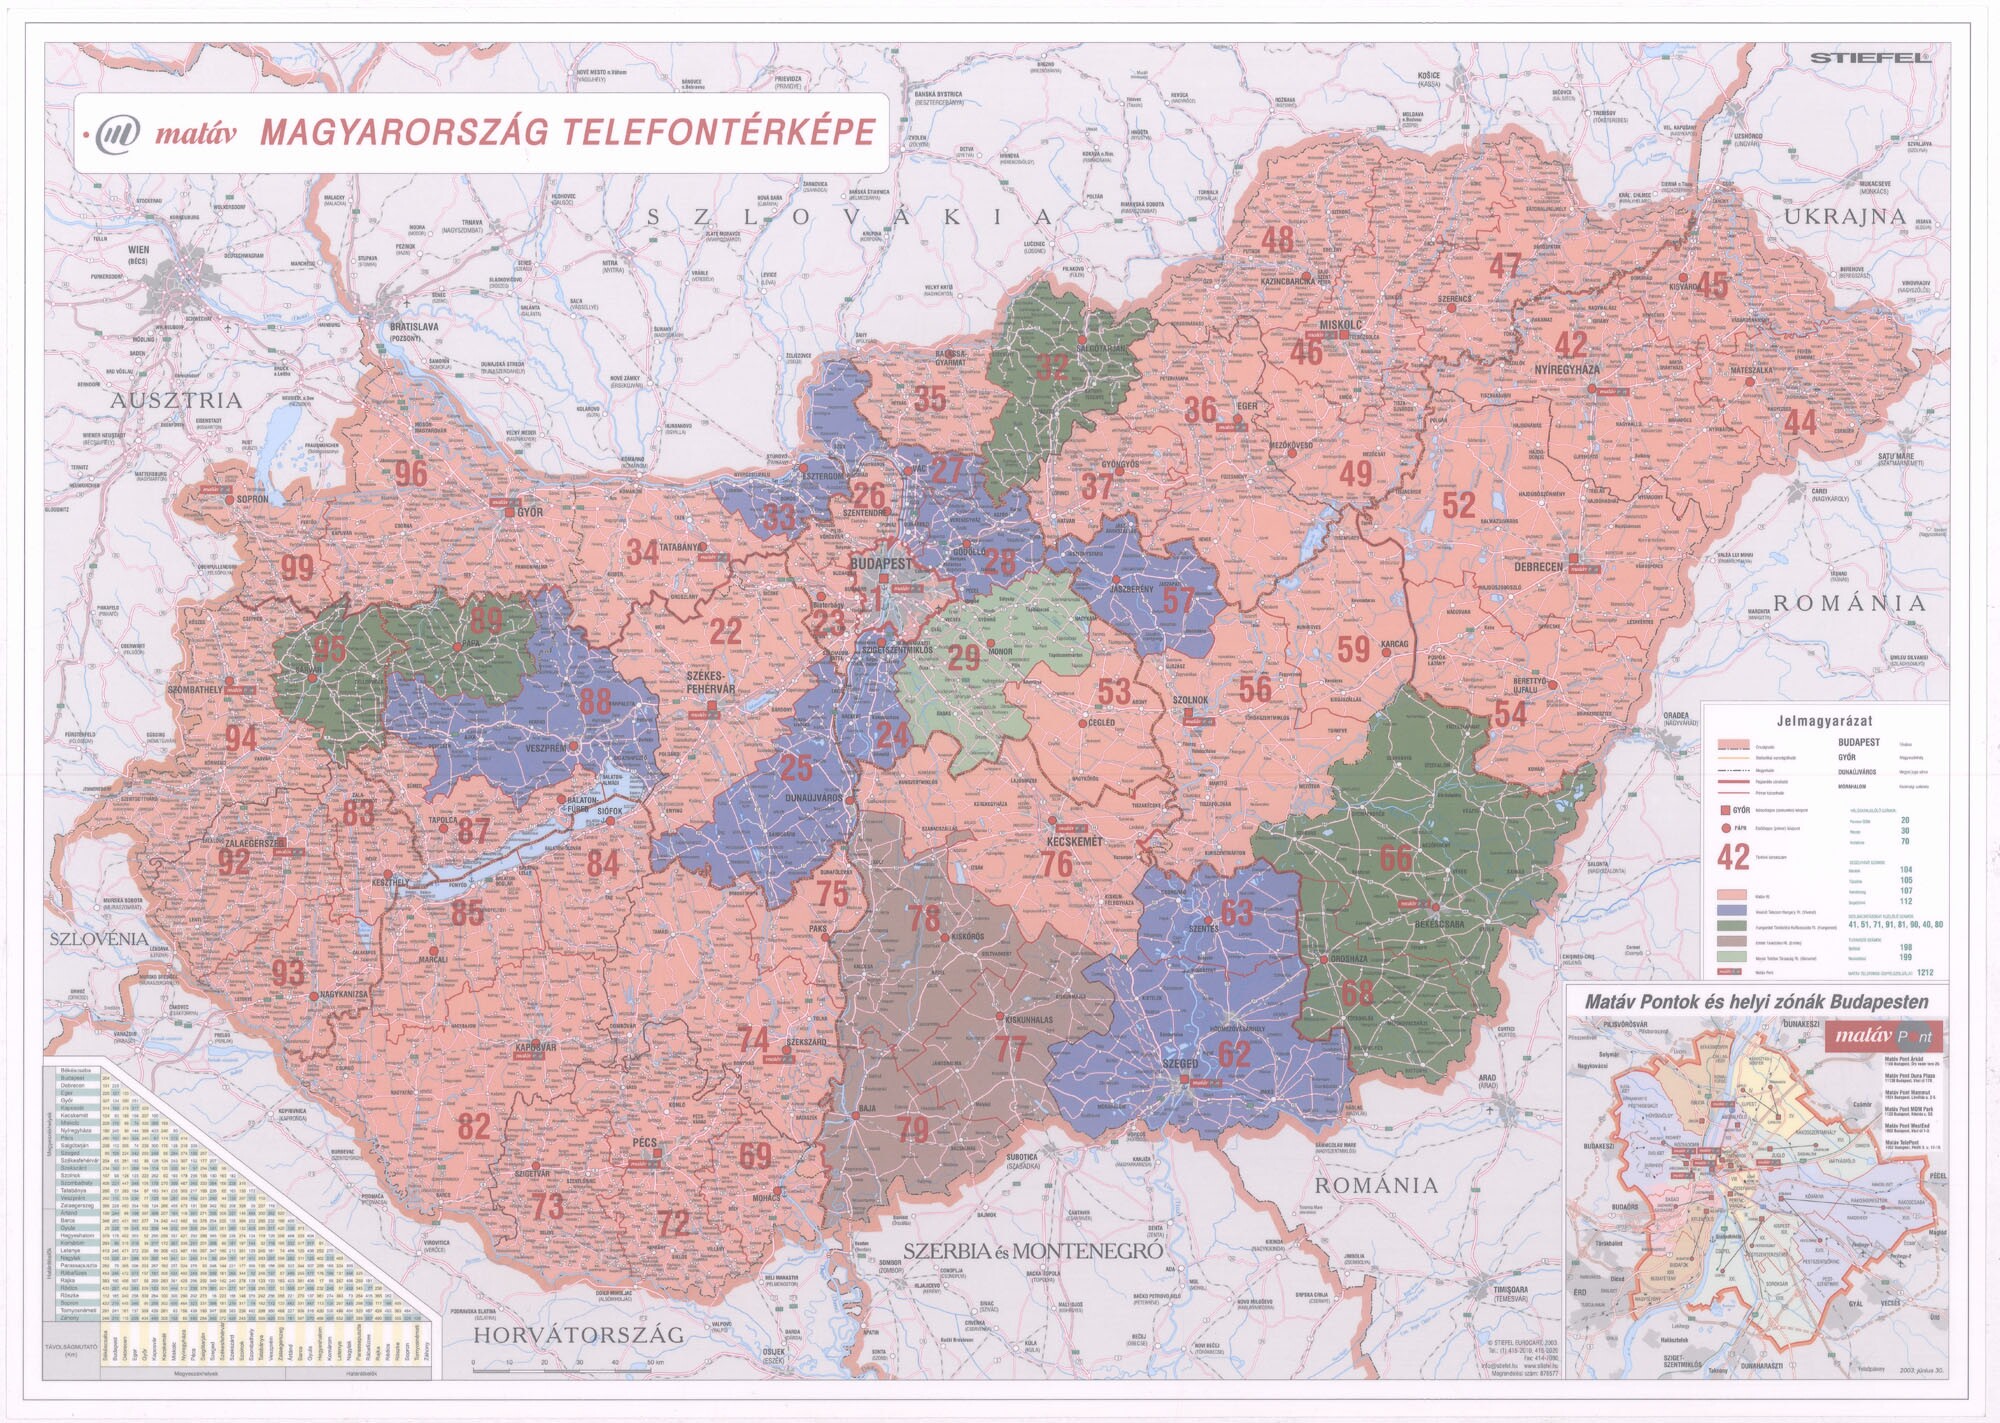 Magyarország telefontérképe, 2003 (Postamúzeum CC BY-NC-SA)